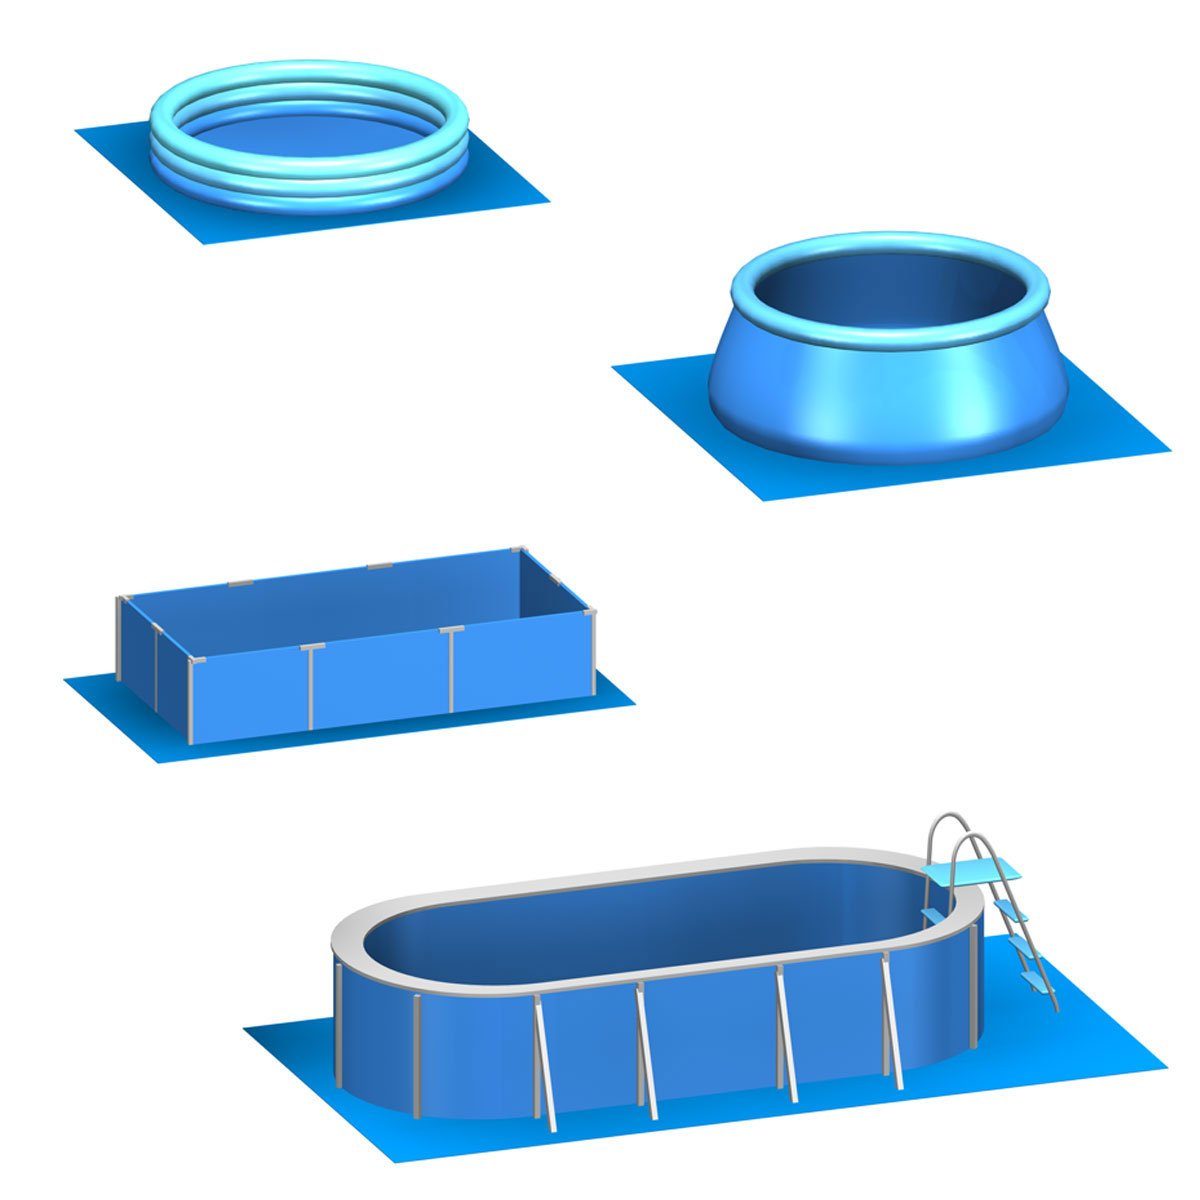 m² Pool Stecksystem 52 Matten 12,1 Blau 50x50 eyepower EVA Bodenmatte Poolunterlage Set, erweiterbares